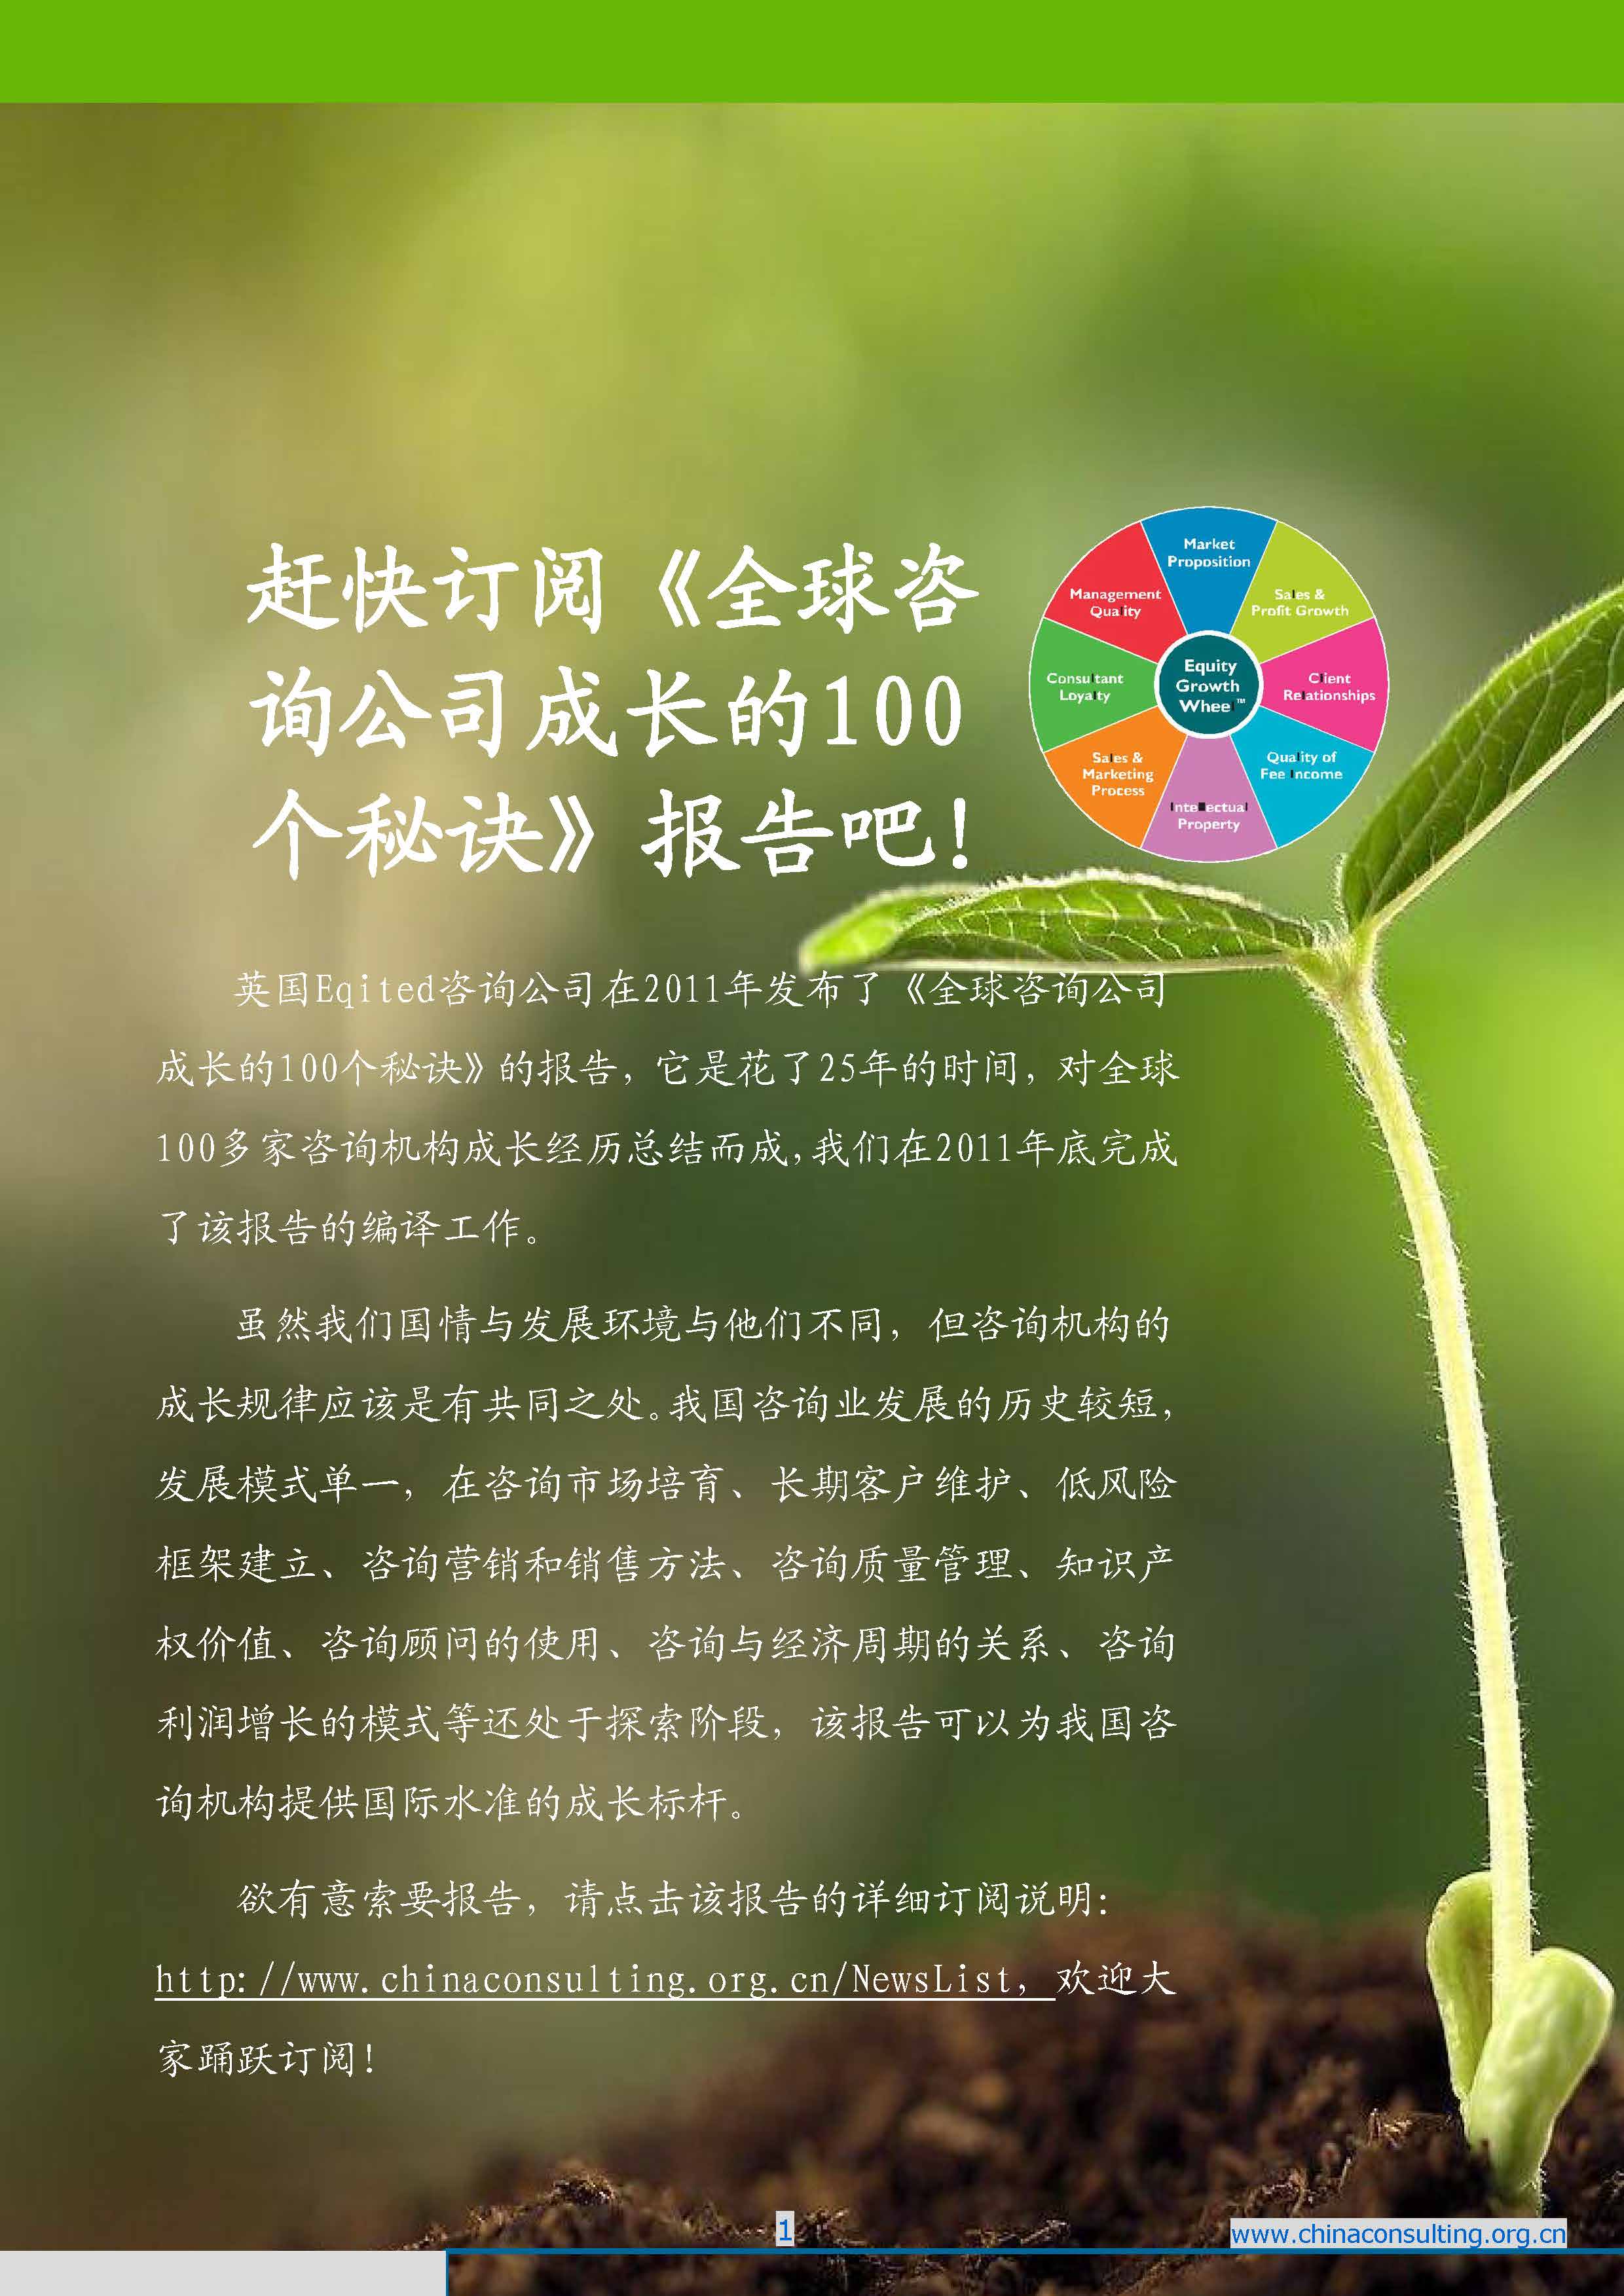 8中国科技咨询协会国际快讯（第八期）_页面_03.jpg